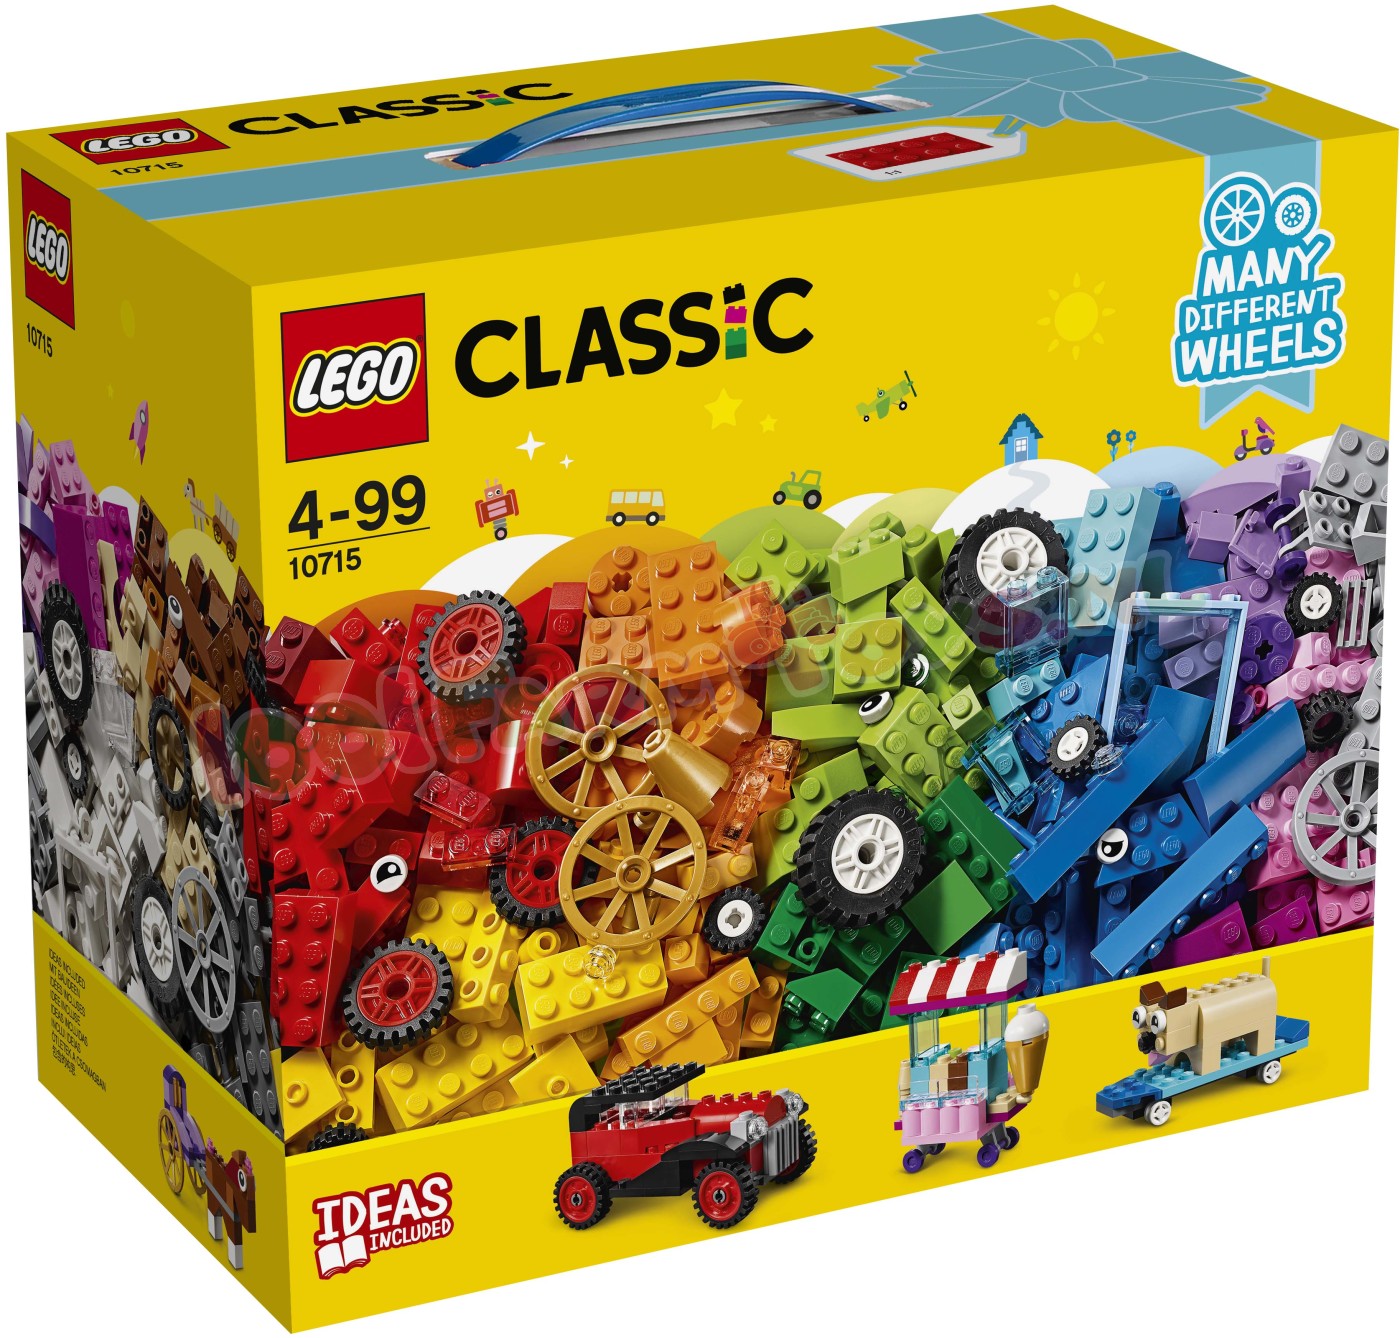 LEGO CLASSIC STENEN OP WIELEN - 10715 - Farm - 1001Farmtoys landbouwspeelgoed - Let op product wordt niet meer geproduceerd door LEGO